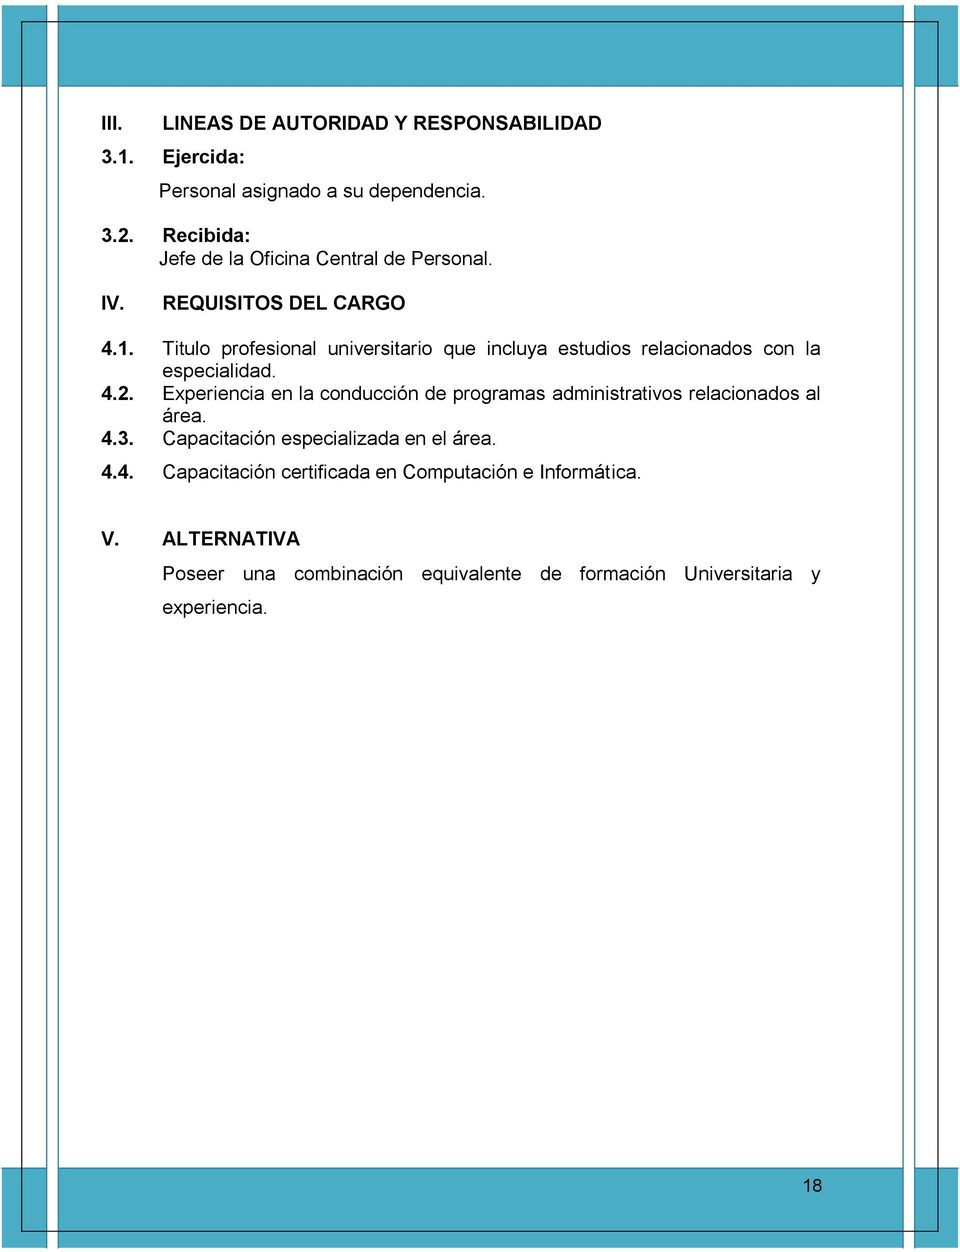 Titulo profesional universitario que incluya estudios relacionados con la especialidad. 4.2.